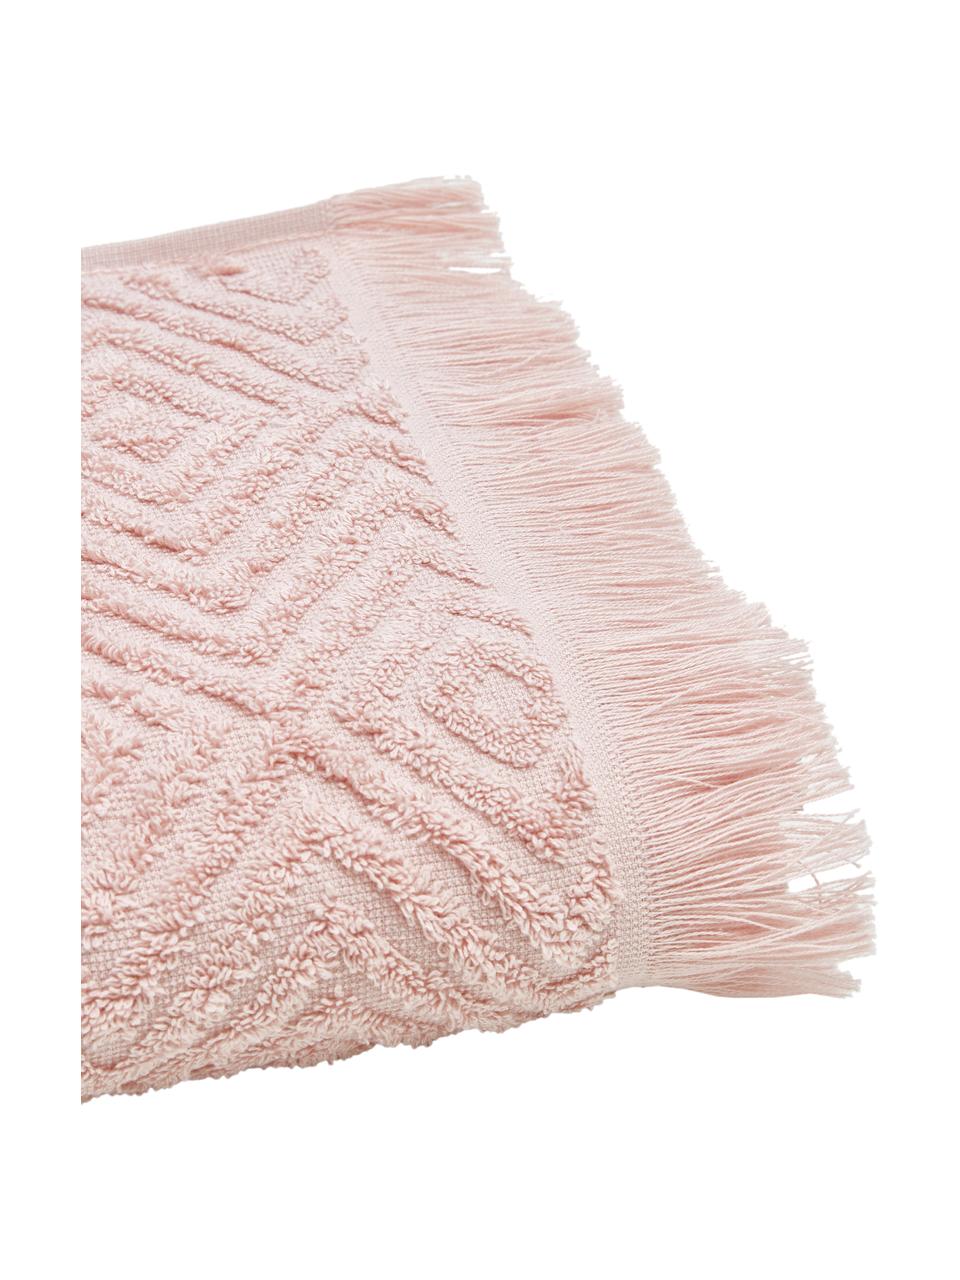 Handtuch Jacqui in verschiedenen Größen, mit Hoch-Tief-Muster, Rosa, Handtuch, B 50 x L 100 cm, 2 Stück